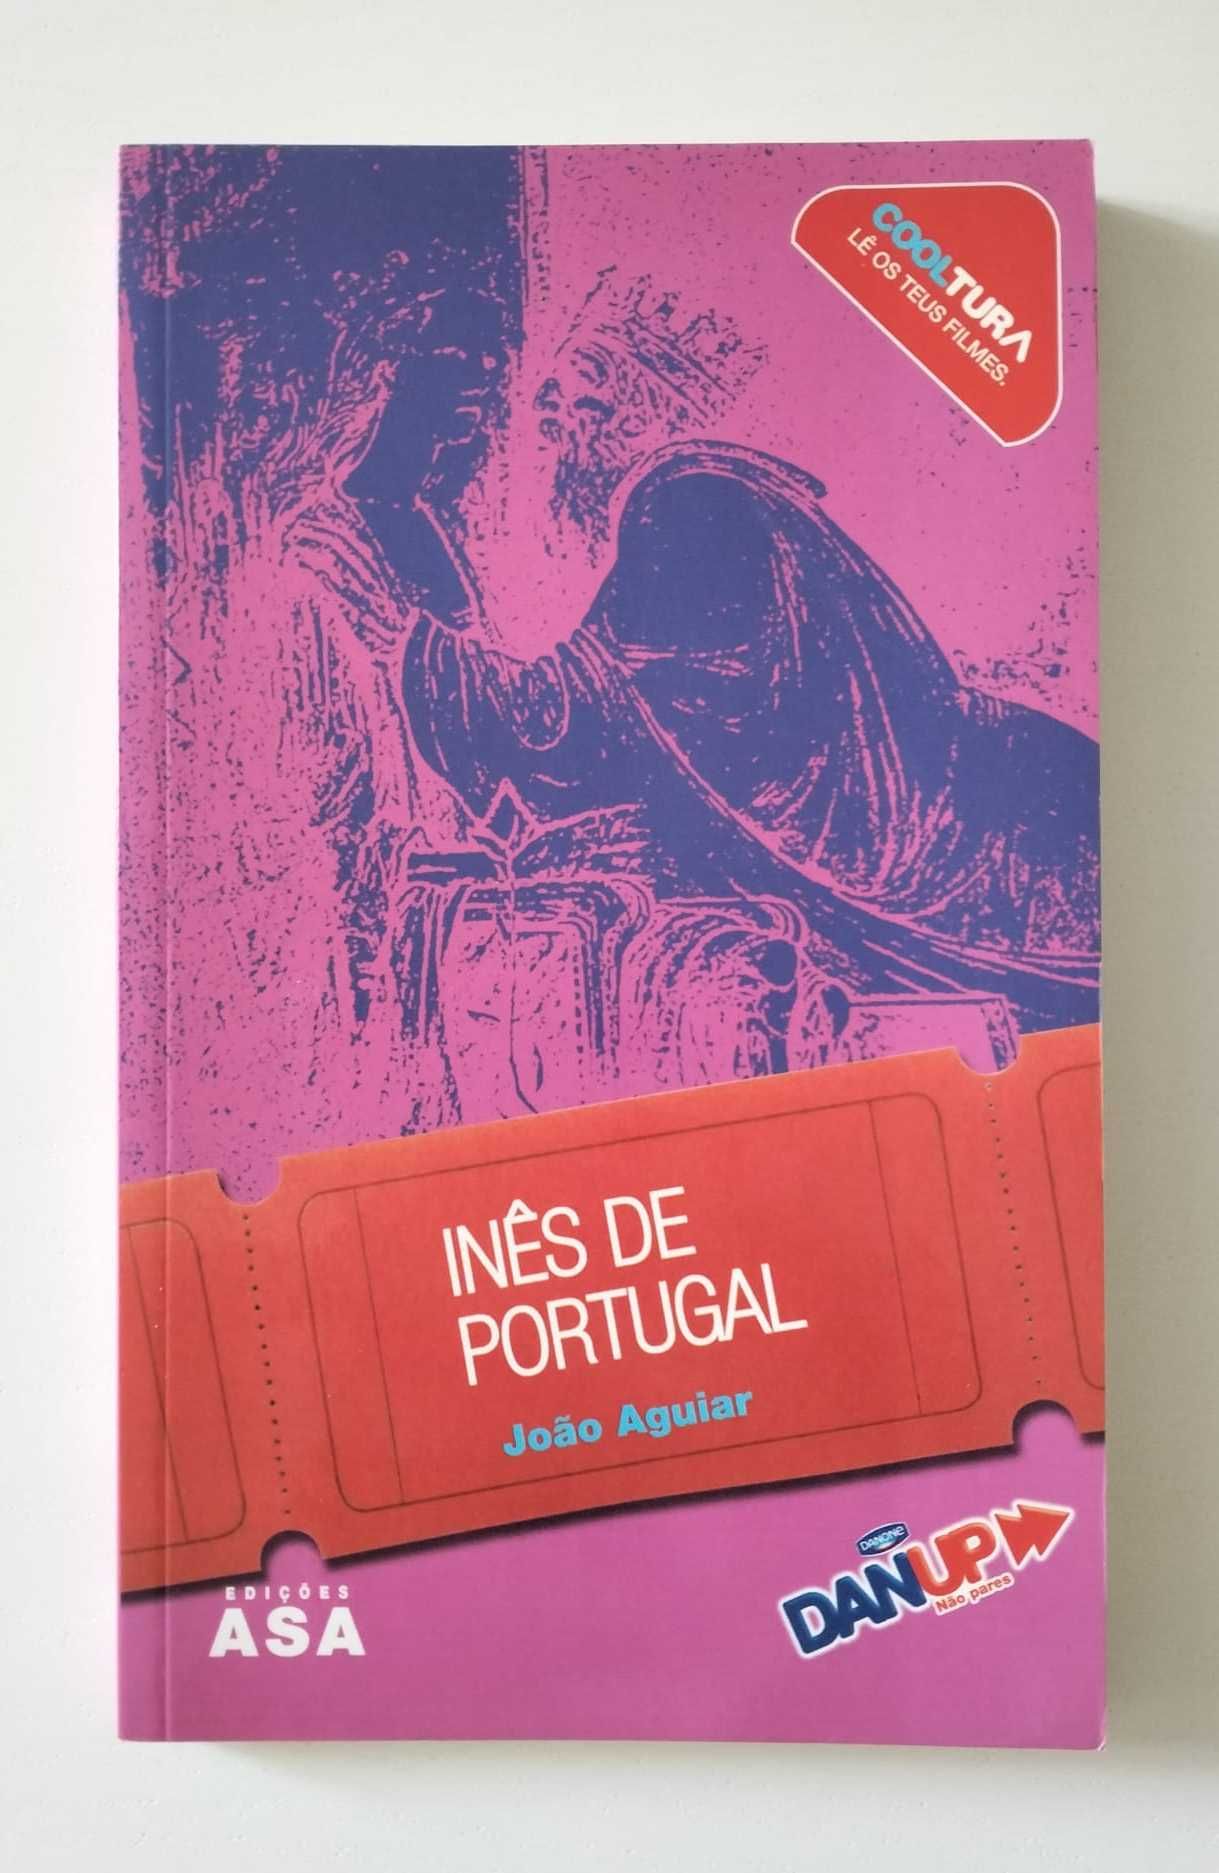 Livro "Inês de Portugal" - João Aguiar